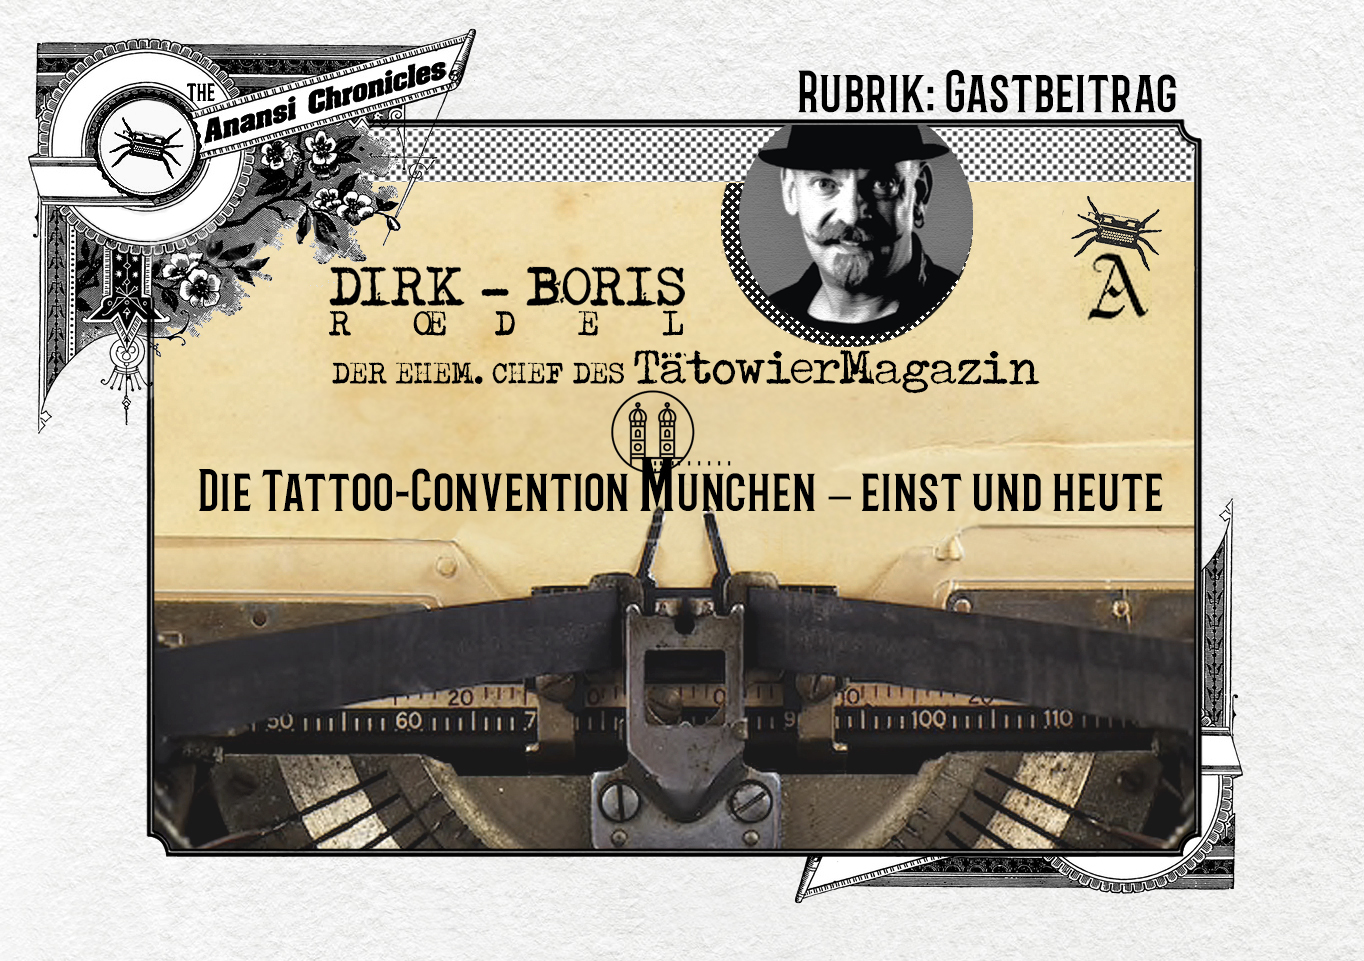 Die Tattoo-Convention München – einst und heute